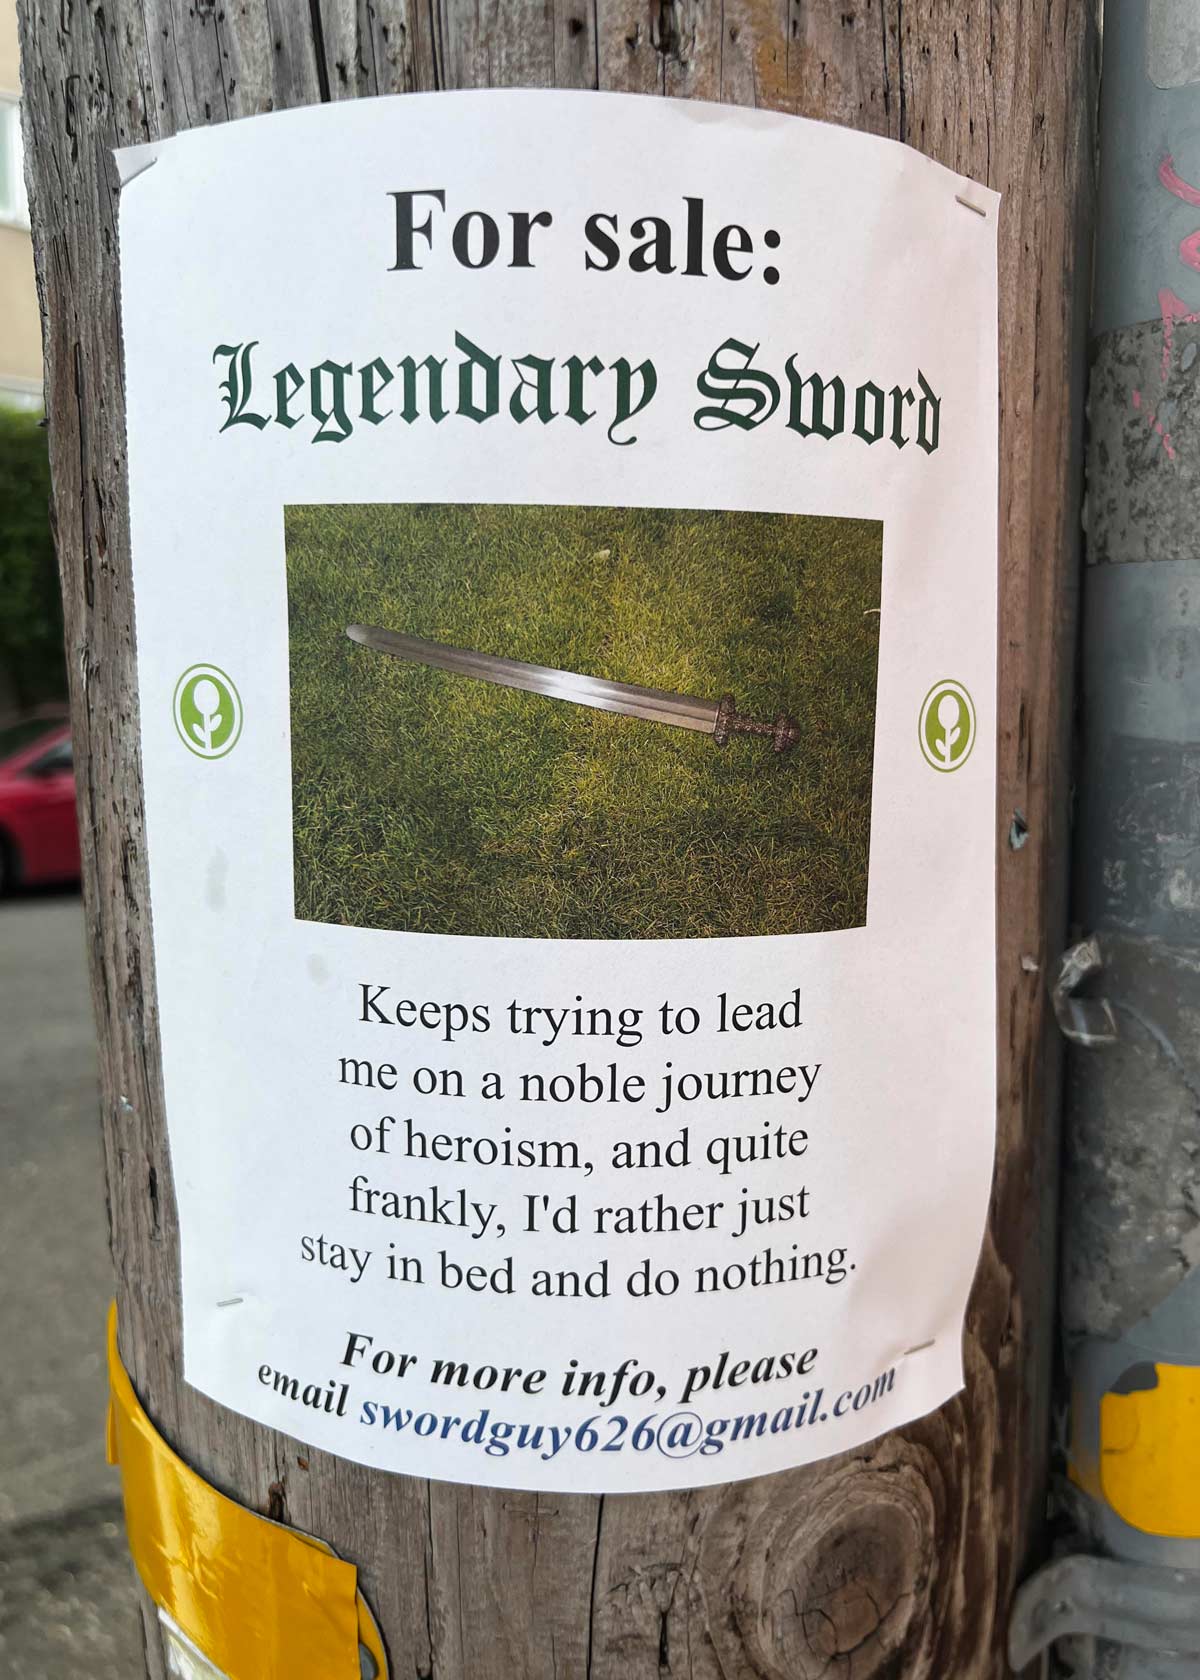 Legendary Sword for sale